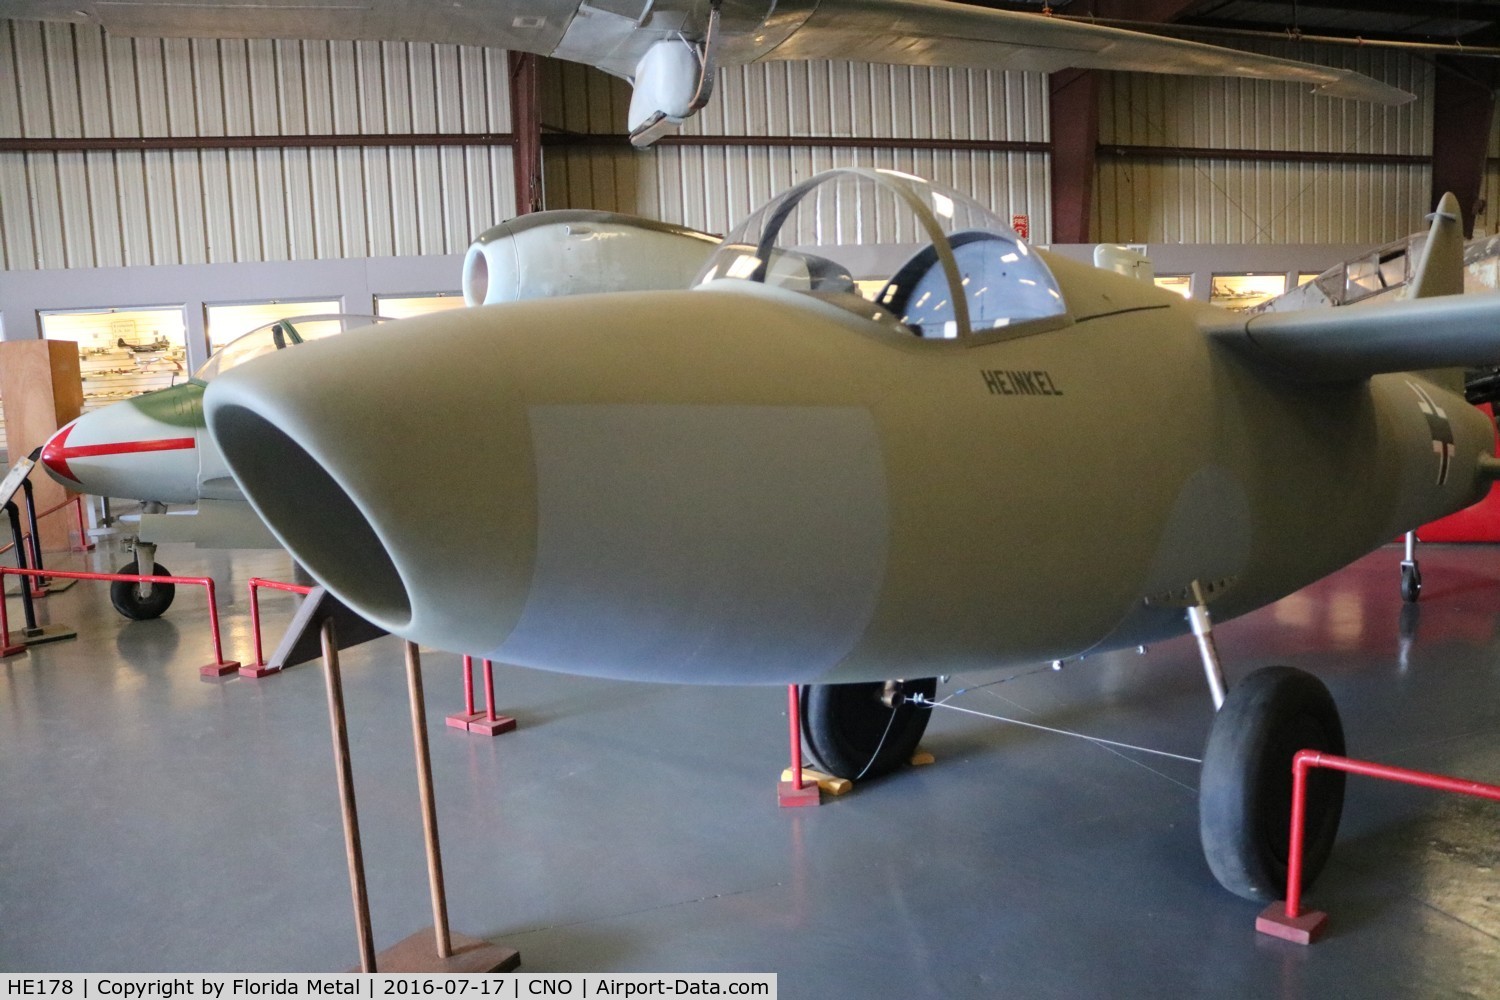 HE178, Heinkel 178 (replica) C/N 01, Heinkel 178